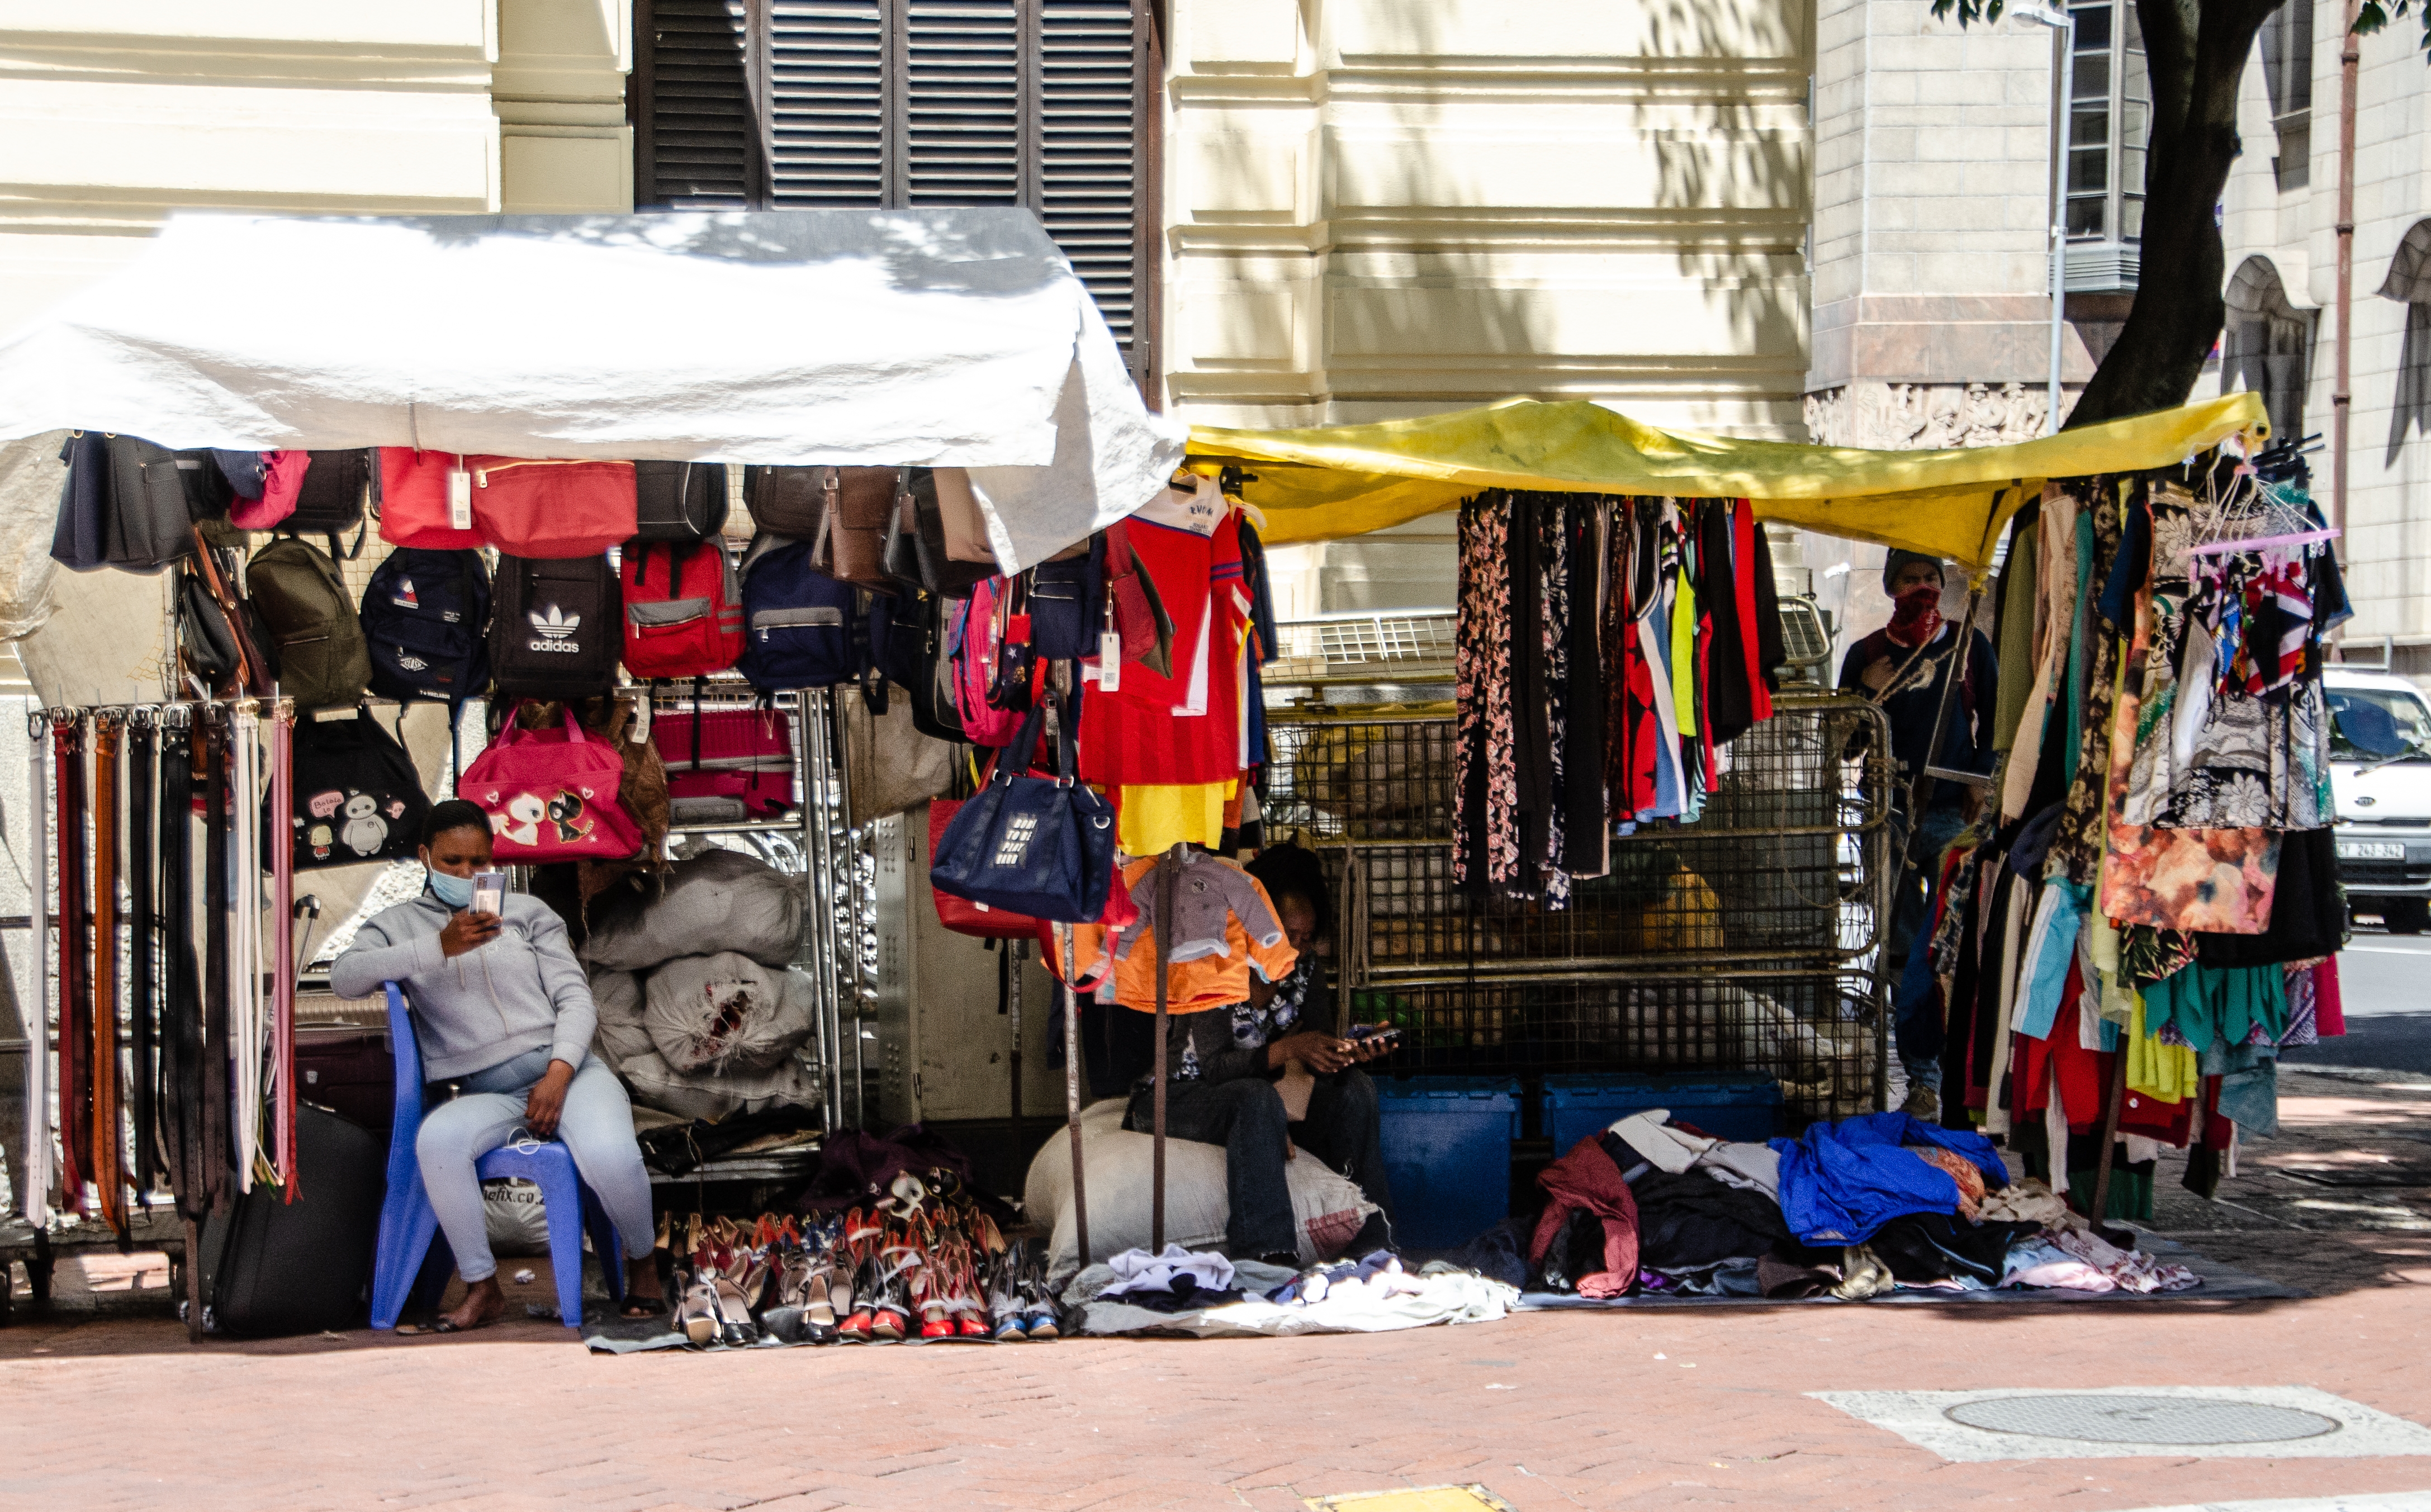 Eine informelle Händlerin bietet ihre Waren auf einem Gehweg in Kapstadt an.